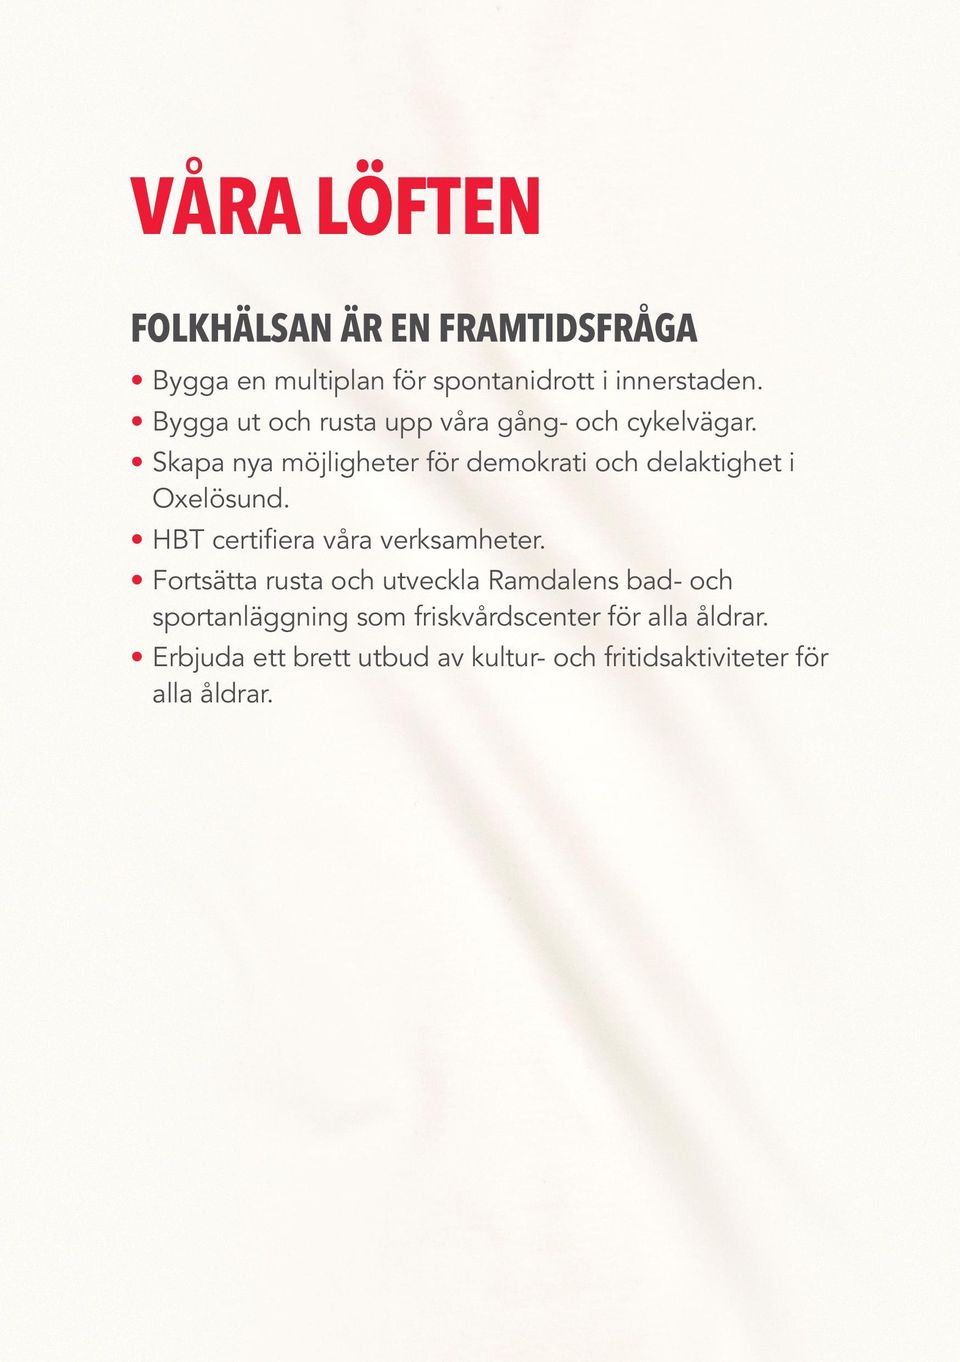 Skapa nya möjligheter för demokrati och delaktighet i Oxelösund. HBT certifiera våra verksamheter.